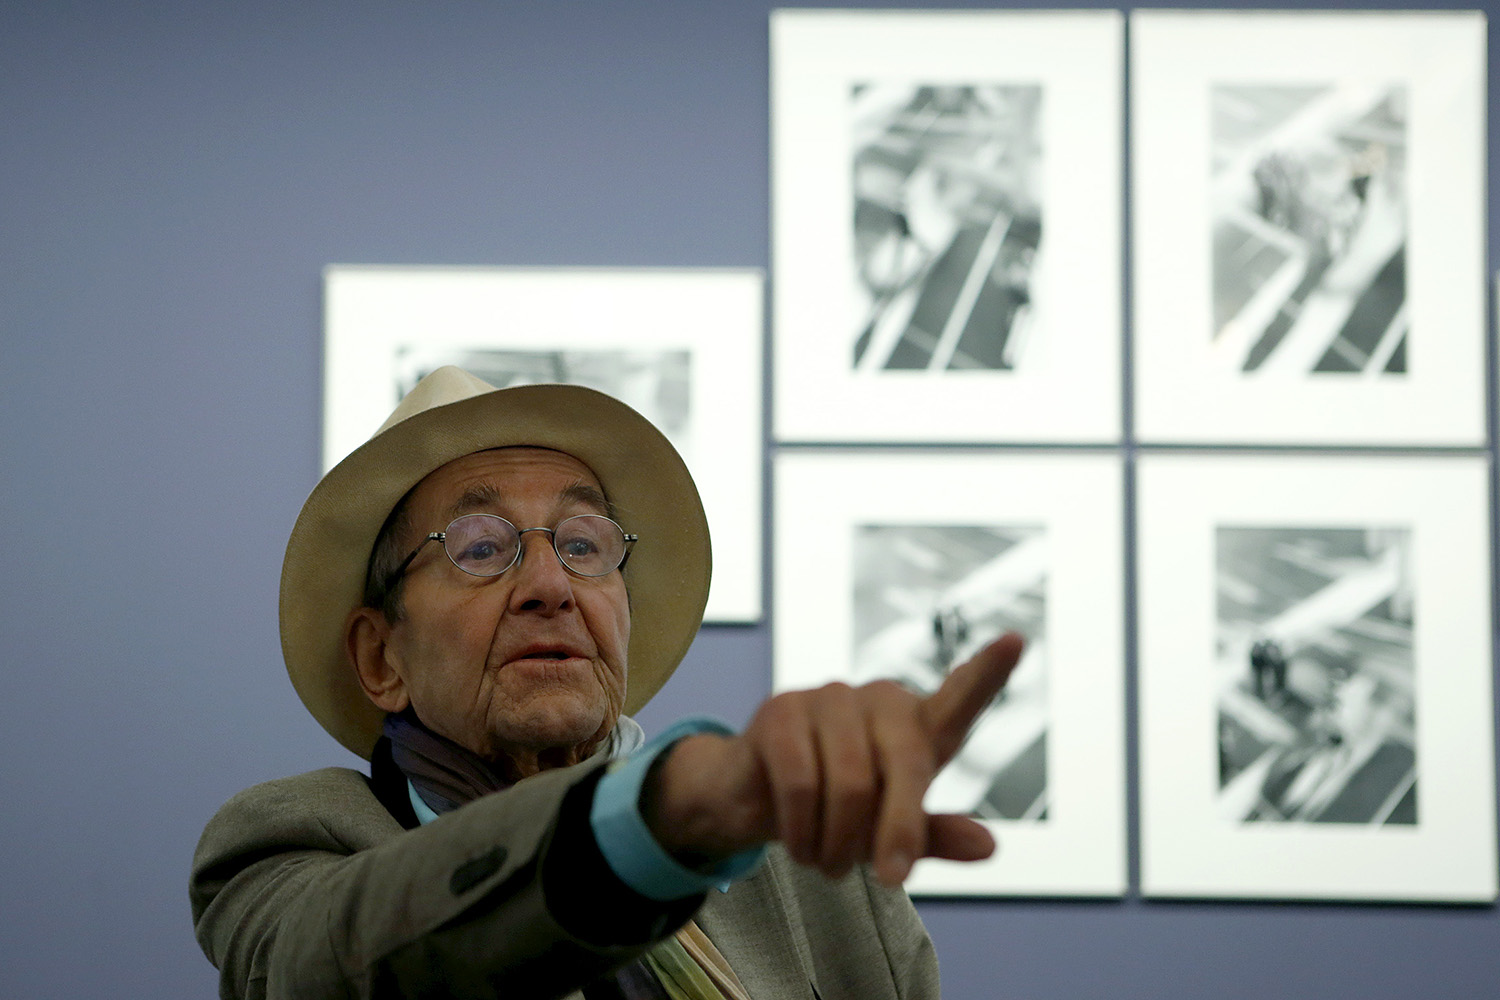 René Burri: Fallece fotógrafo que inmortalizó al Che y su habano